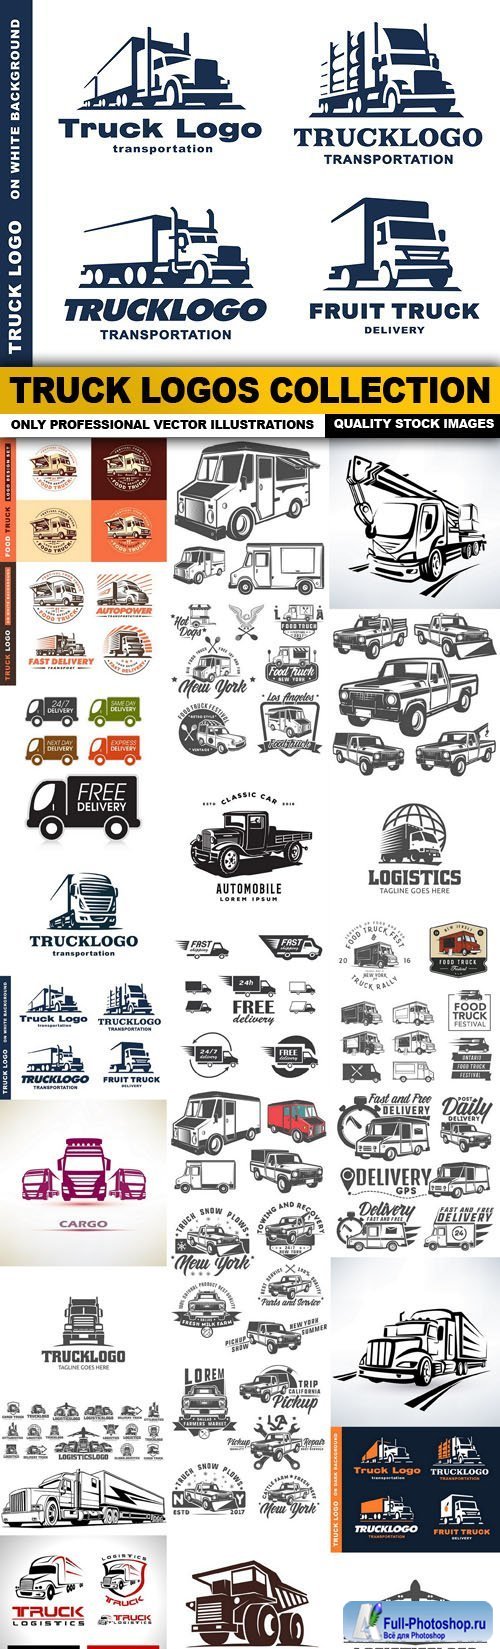 Truck Logos Collection - 25 Vector